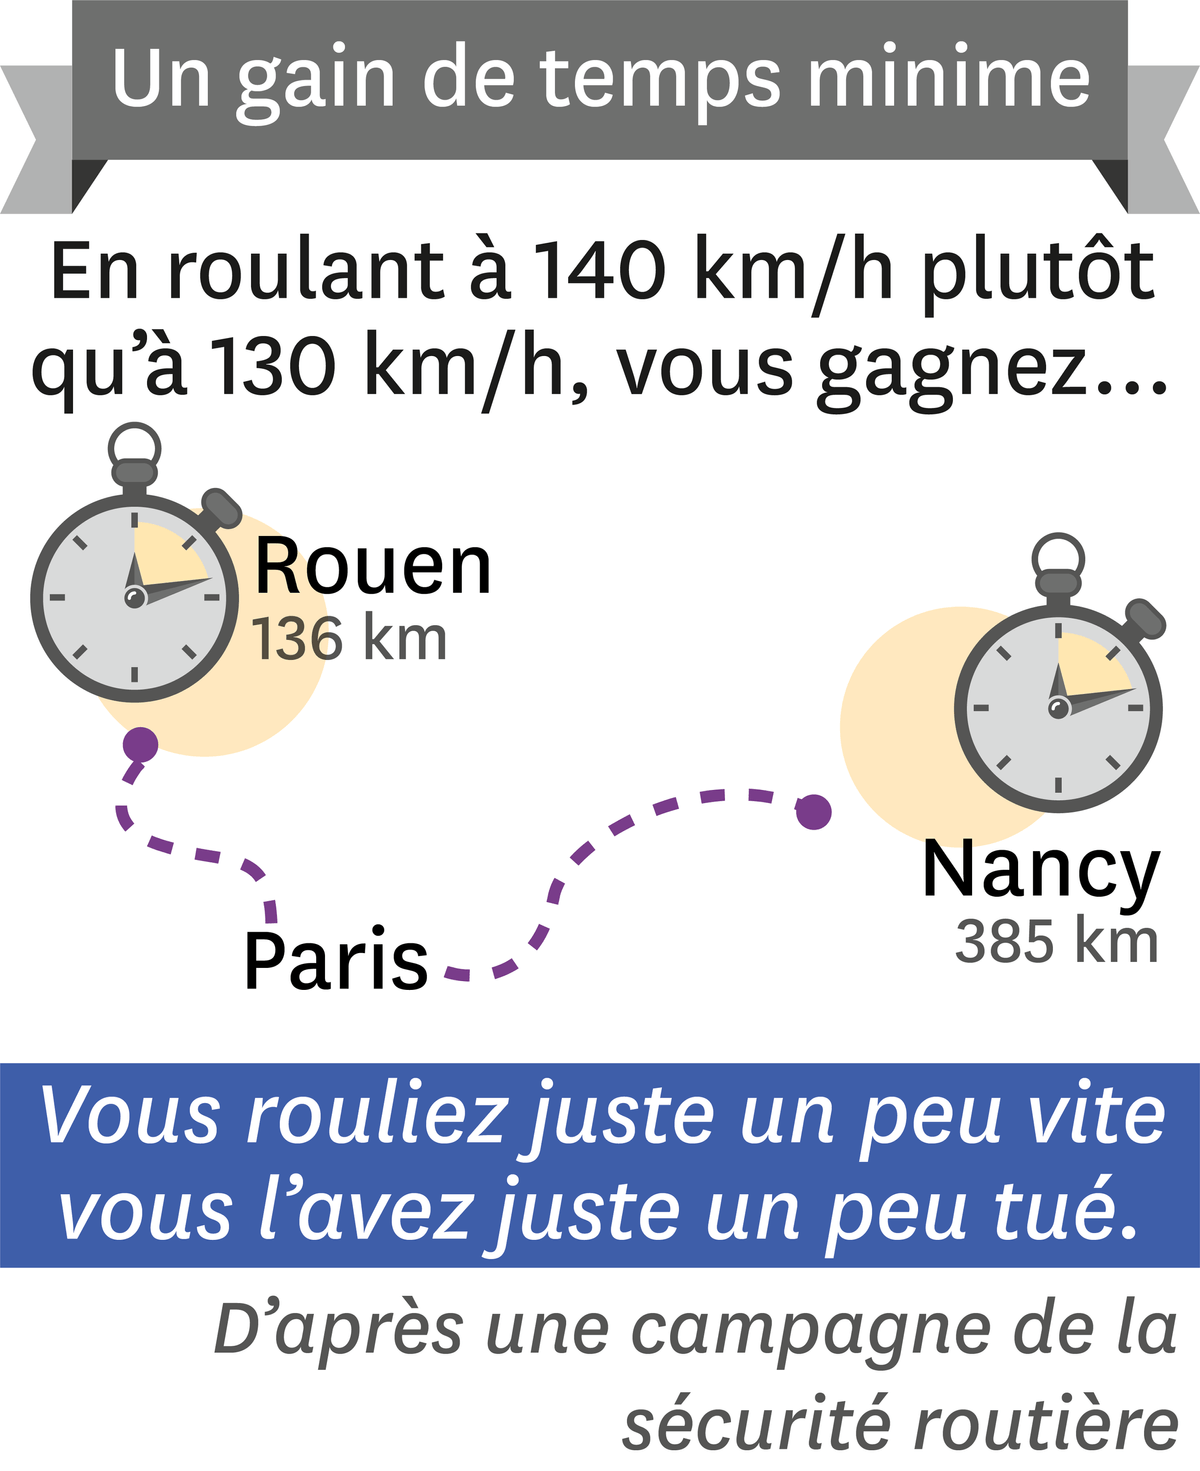 Rouen - Paris - Nancy.